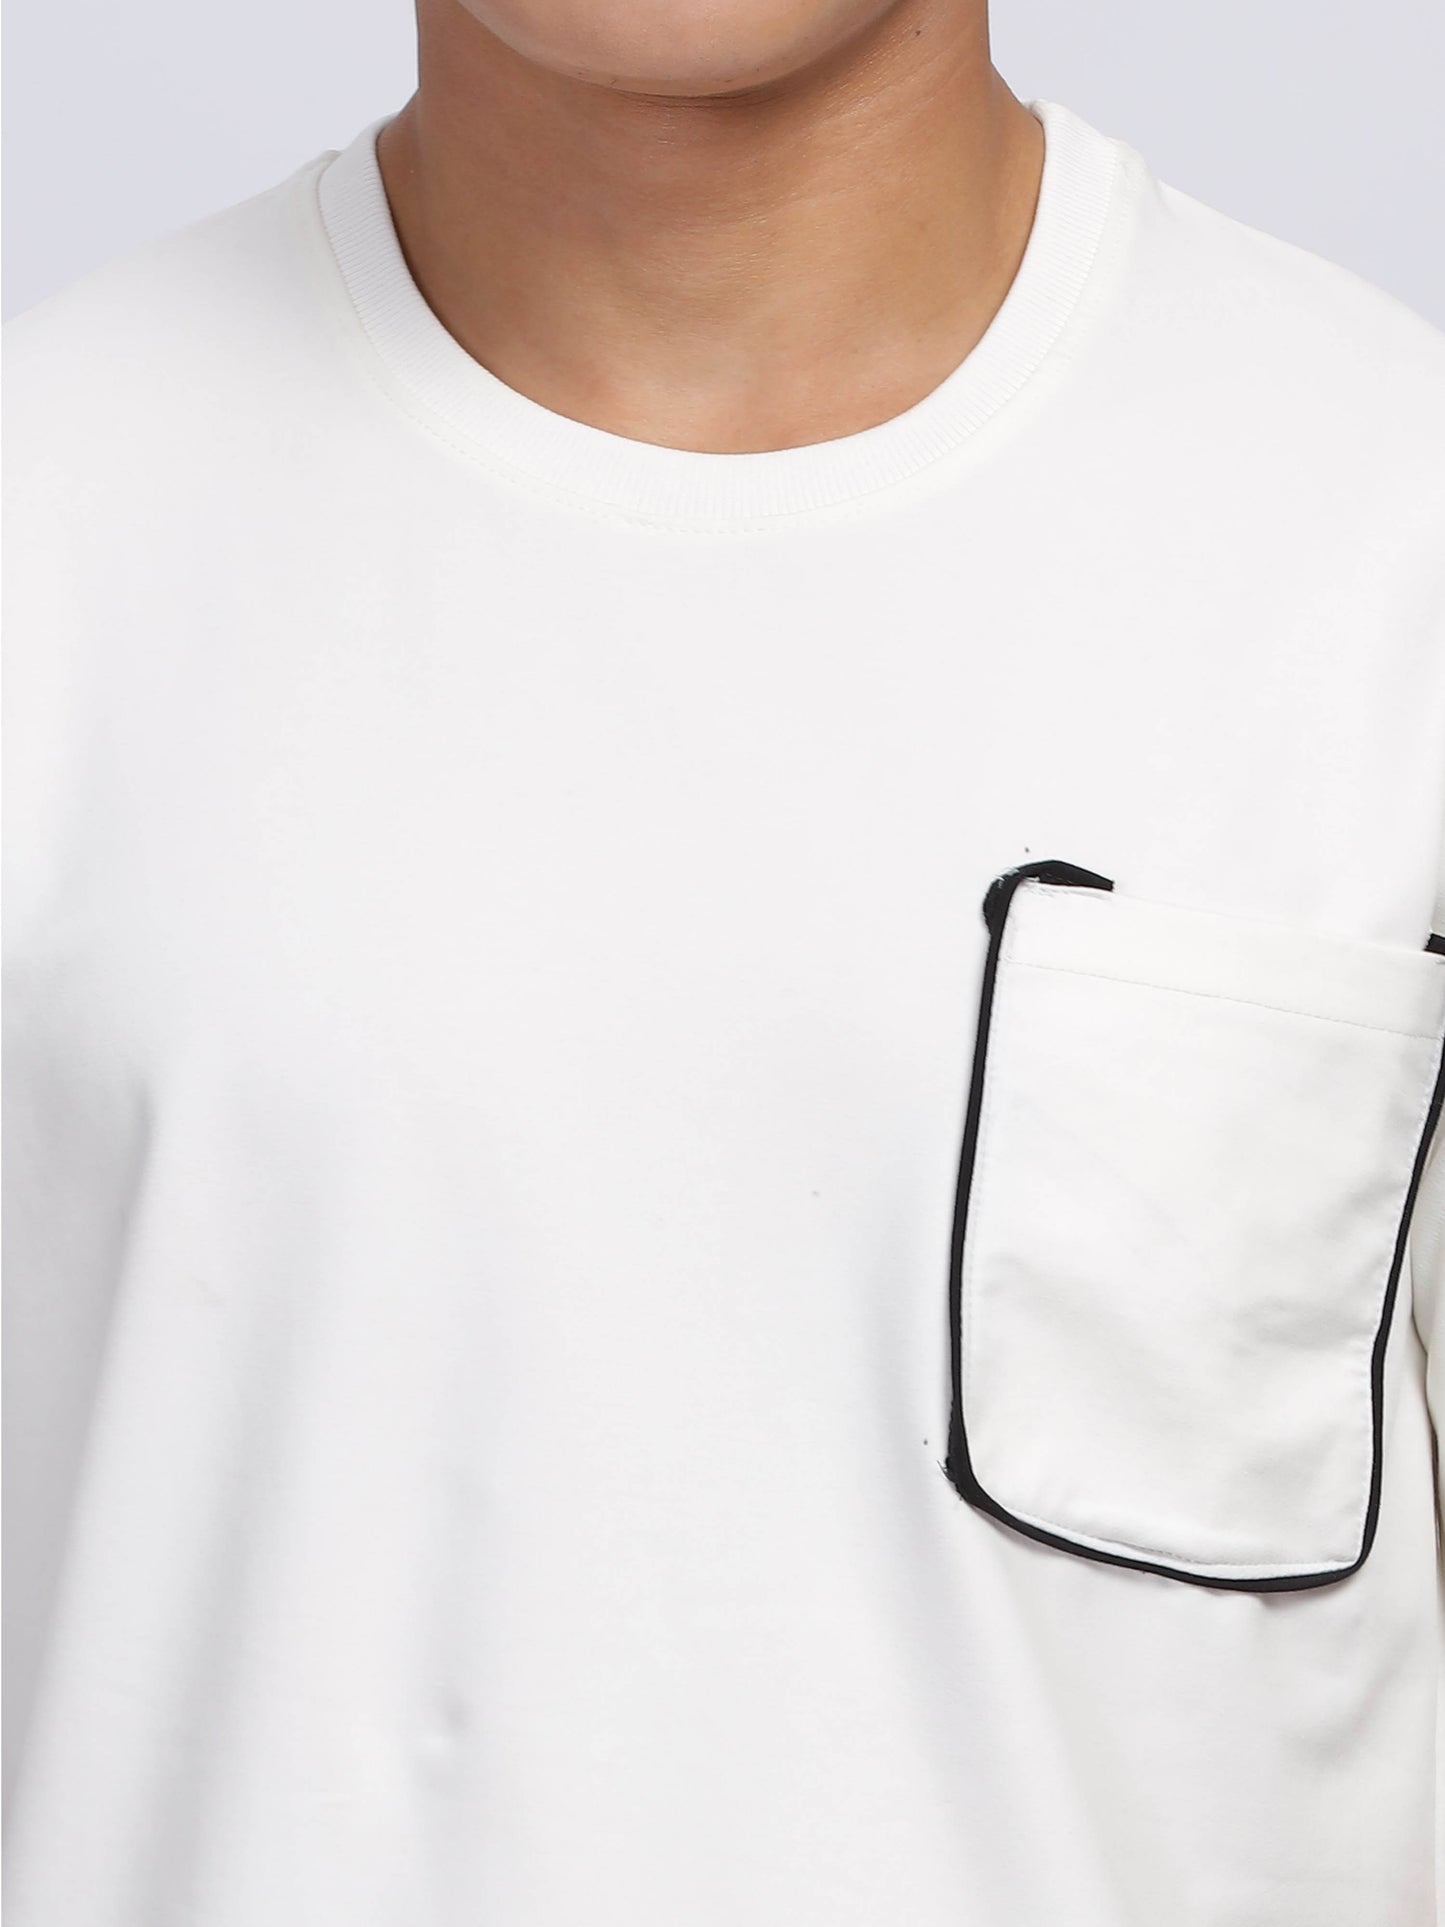 Contrast Stitch White Drop Shoulder T-Shirt